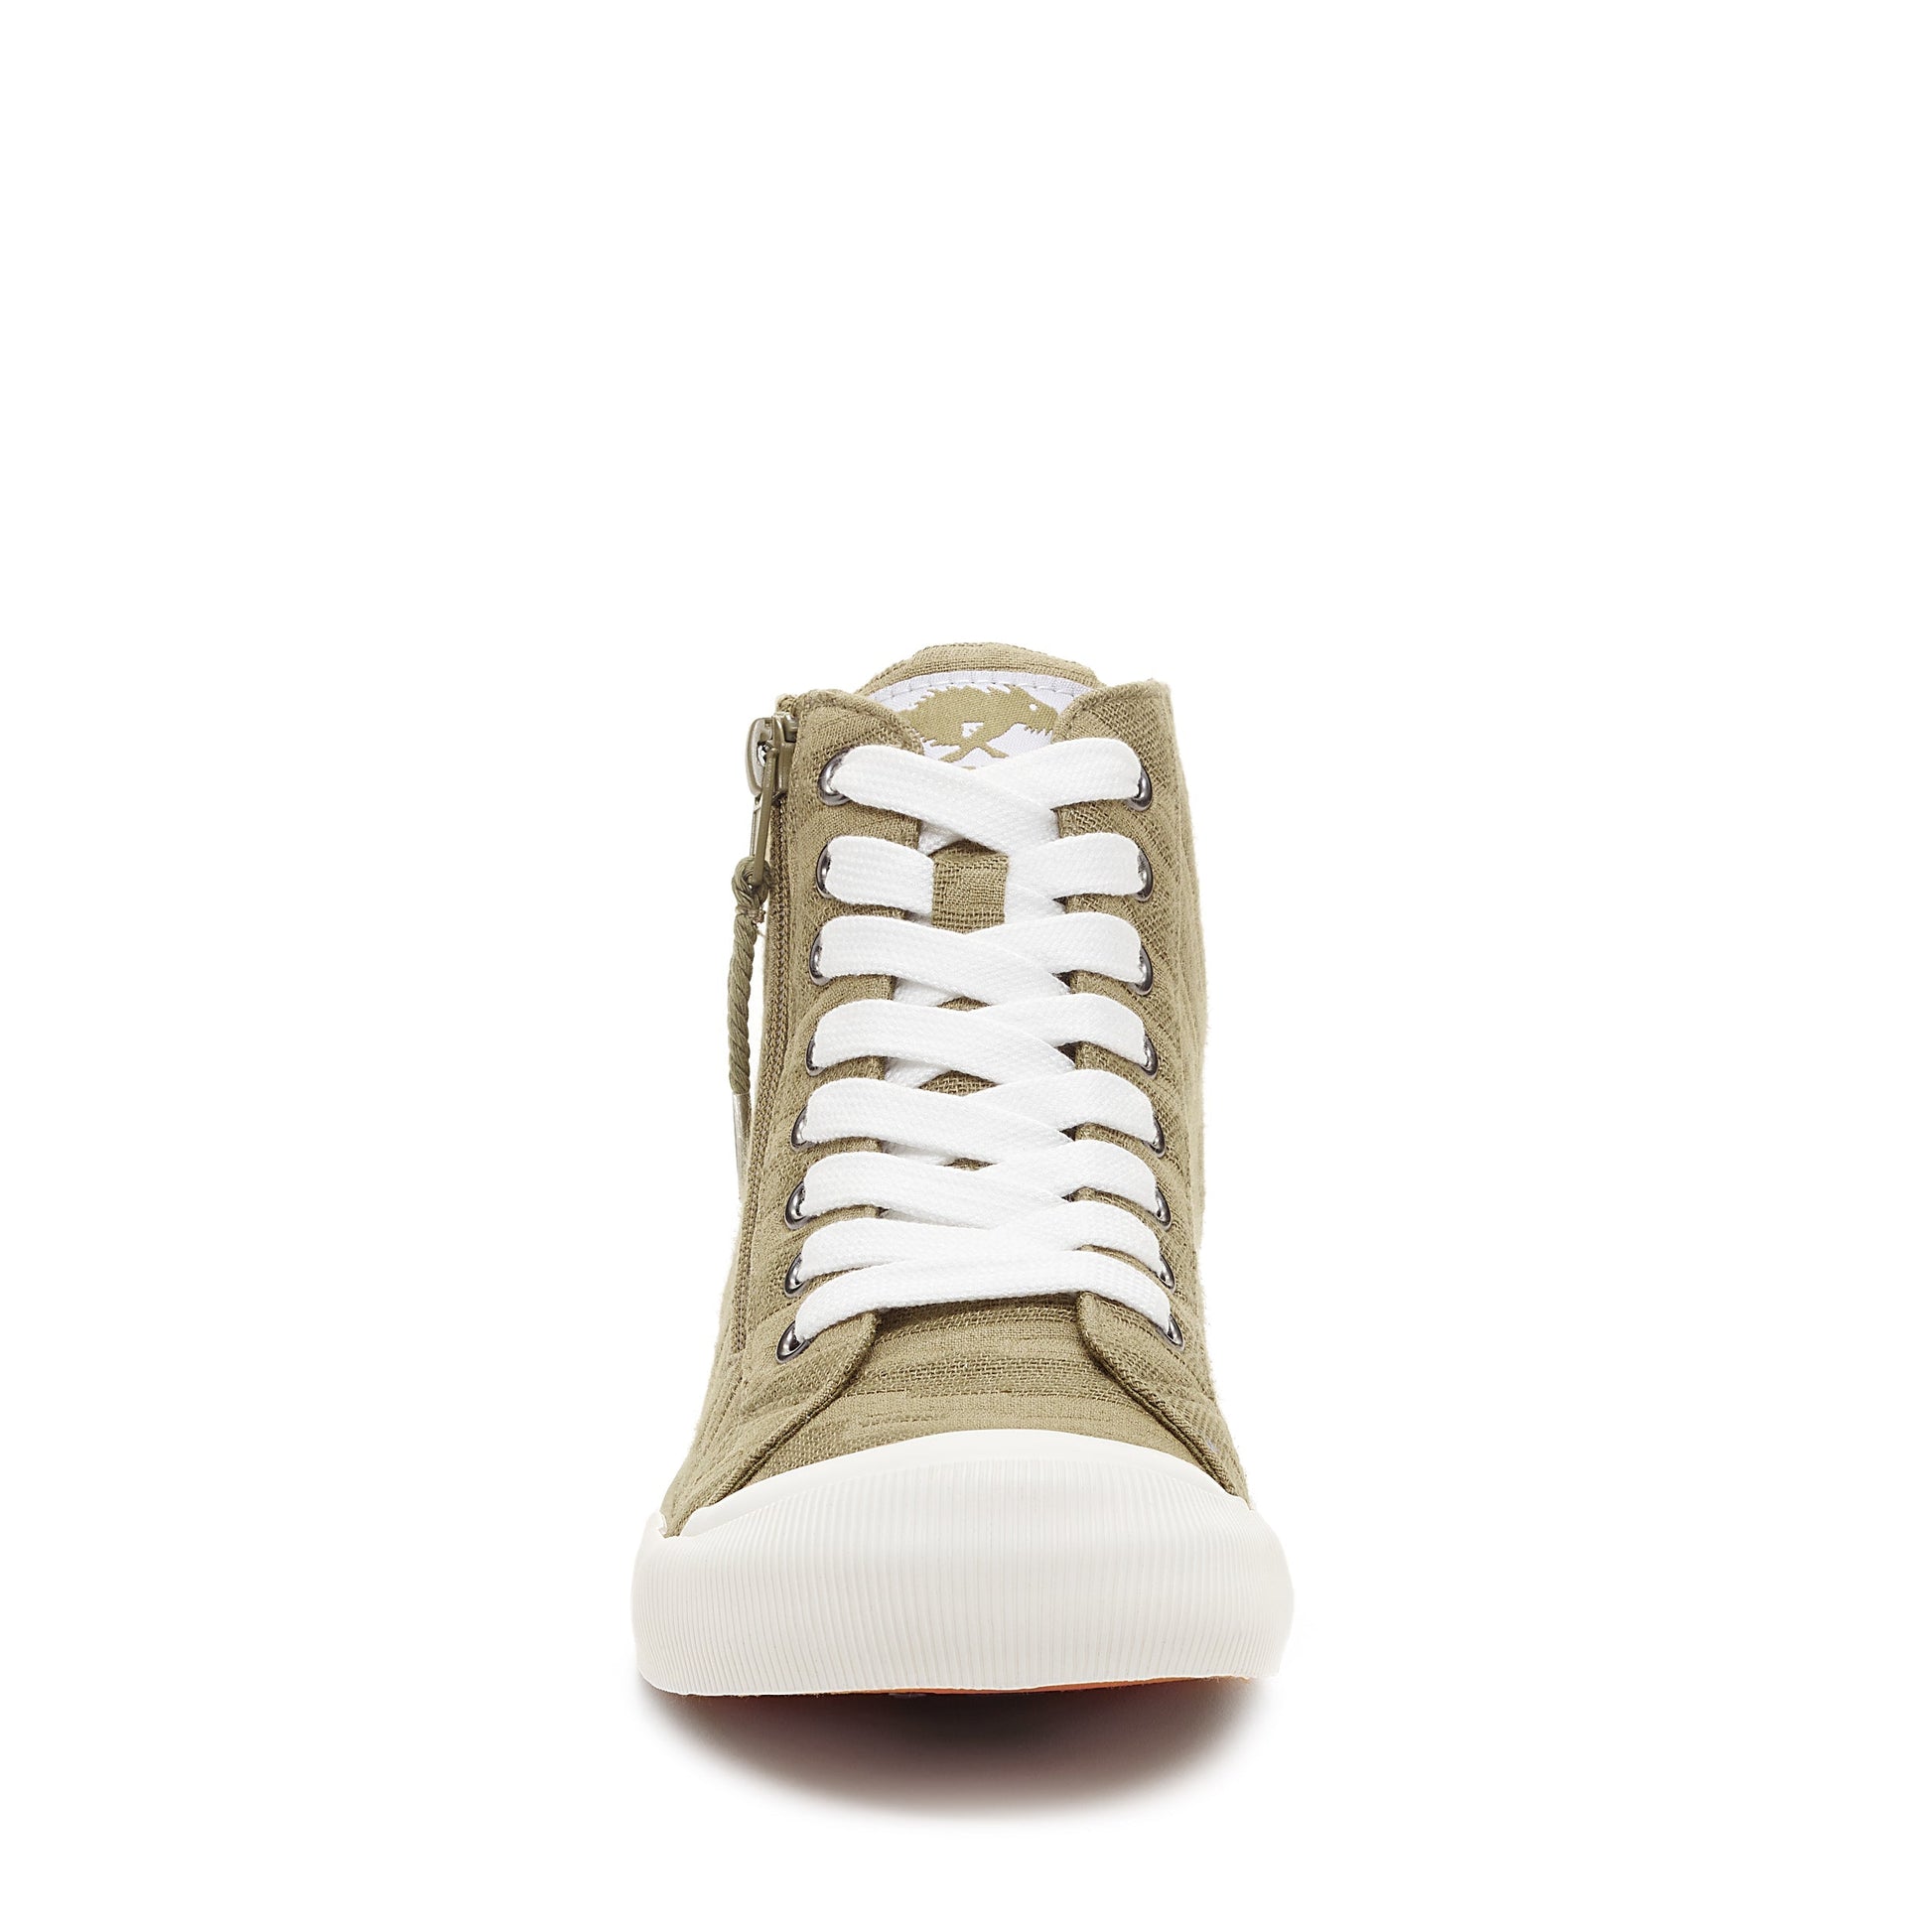 Rocket Dog® Women's Jazzin Olive Textured High Top Sneaker